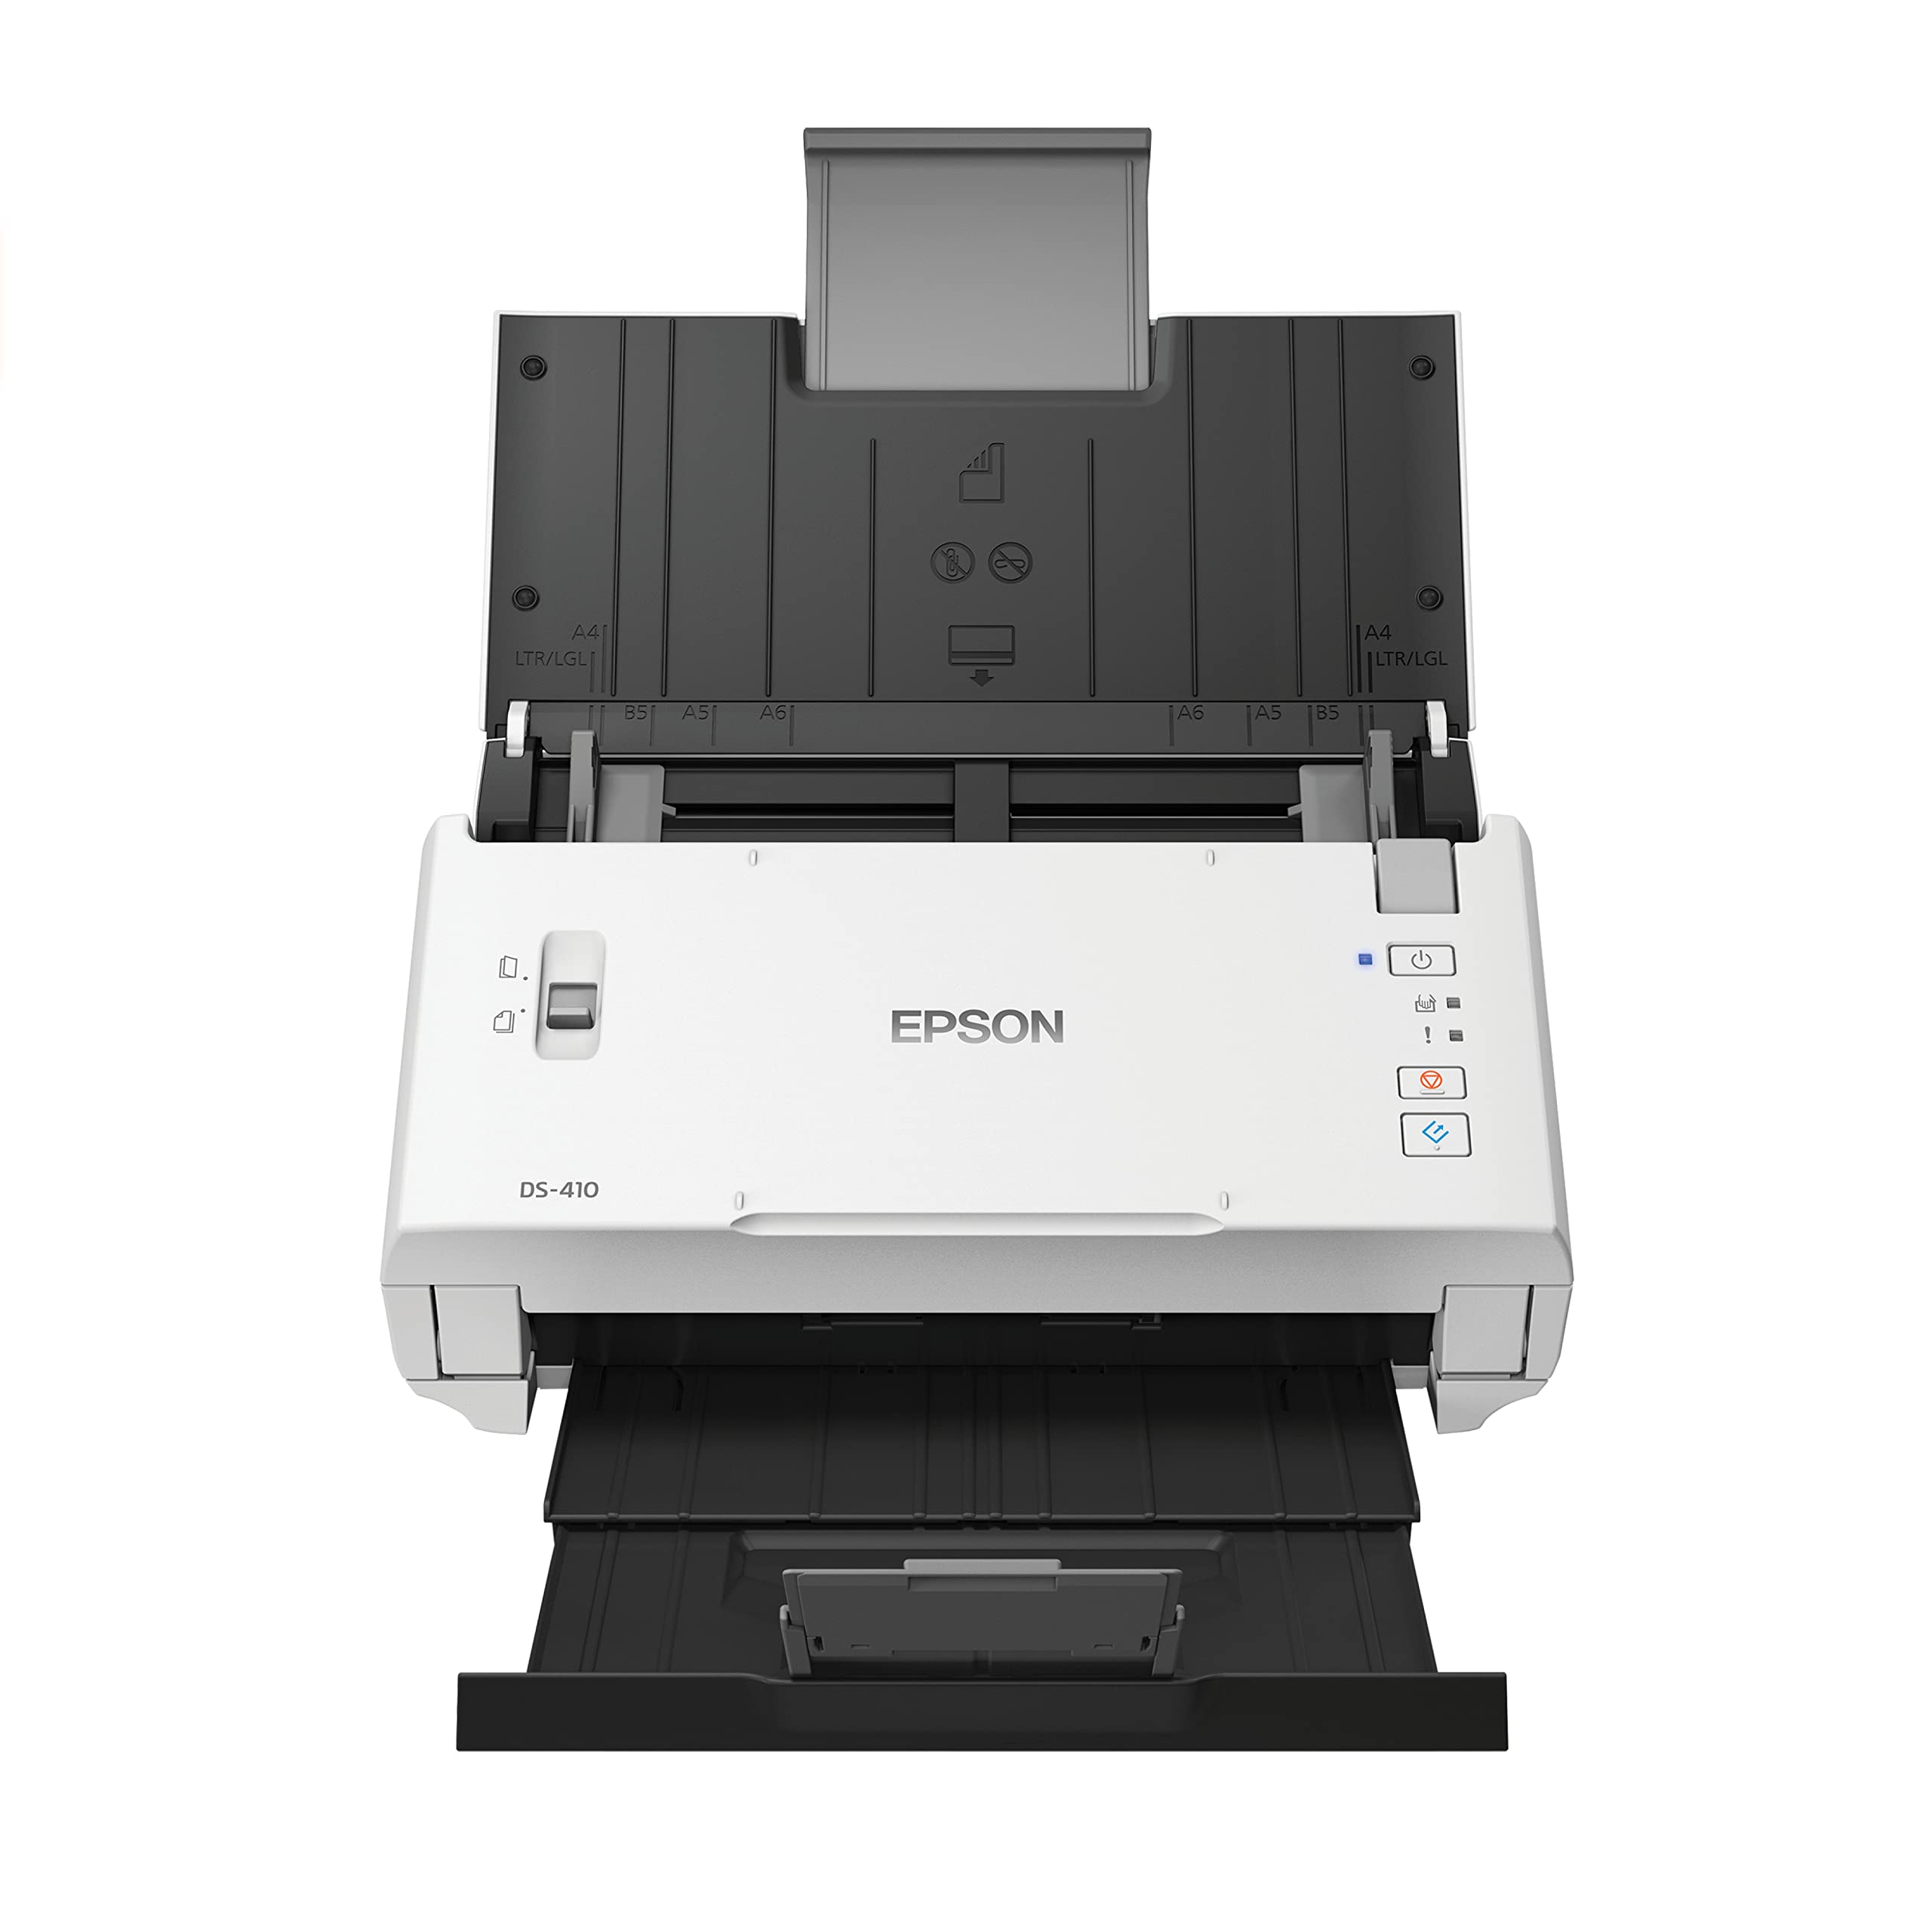 Epson डीएस-410 दस्तावेज़ स्कैनर